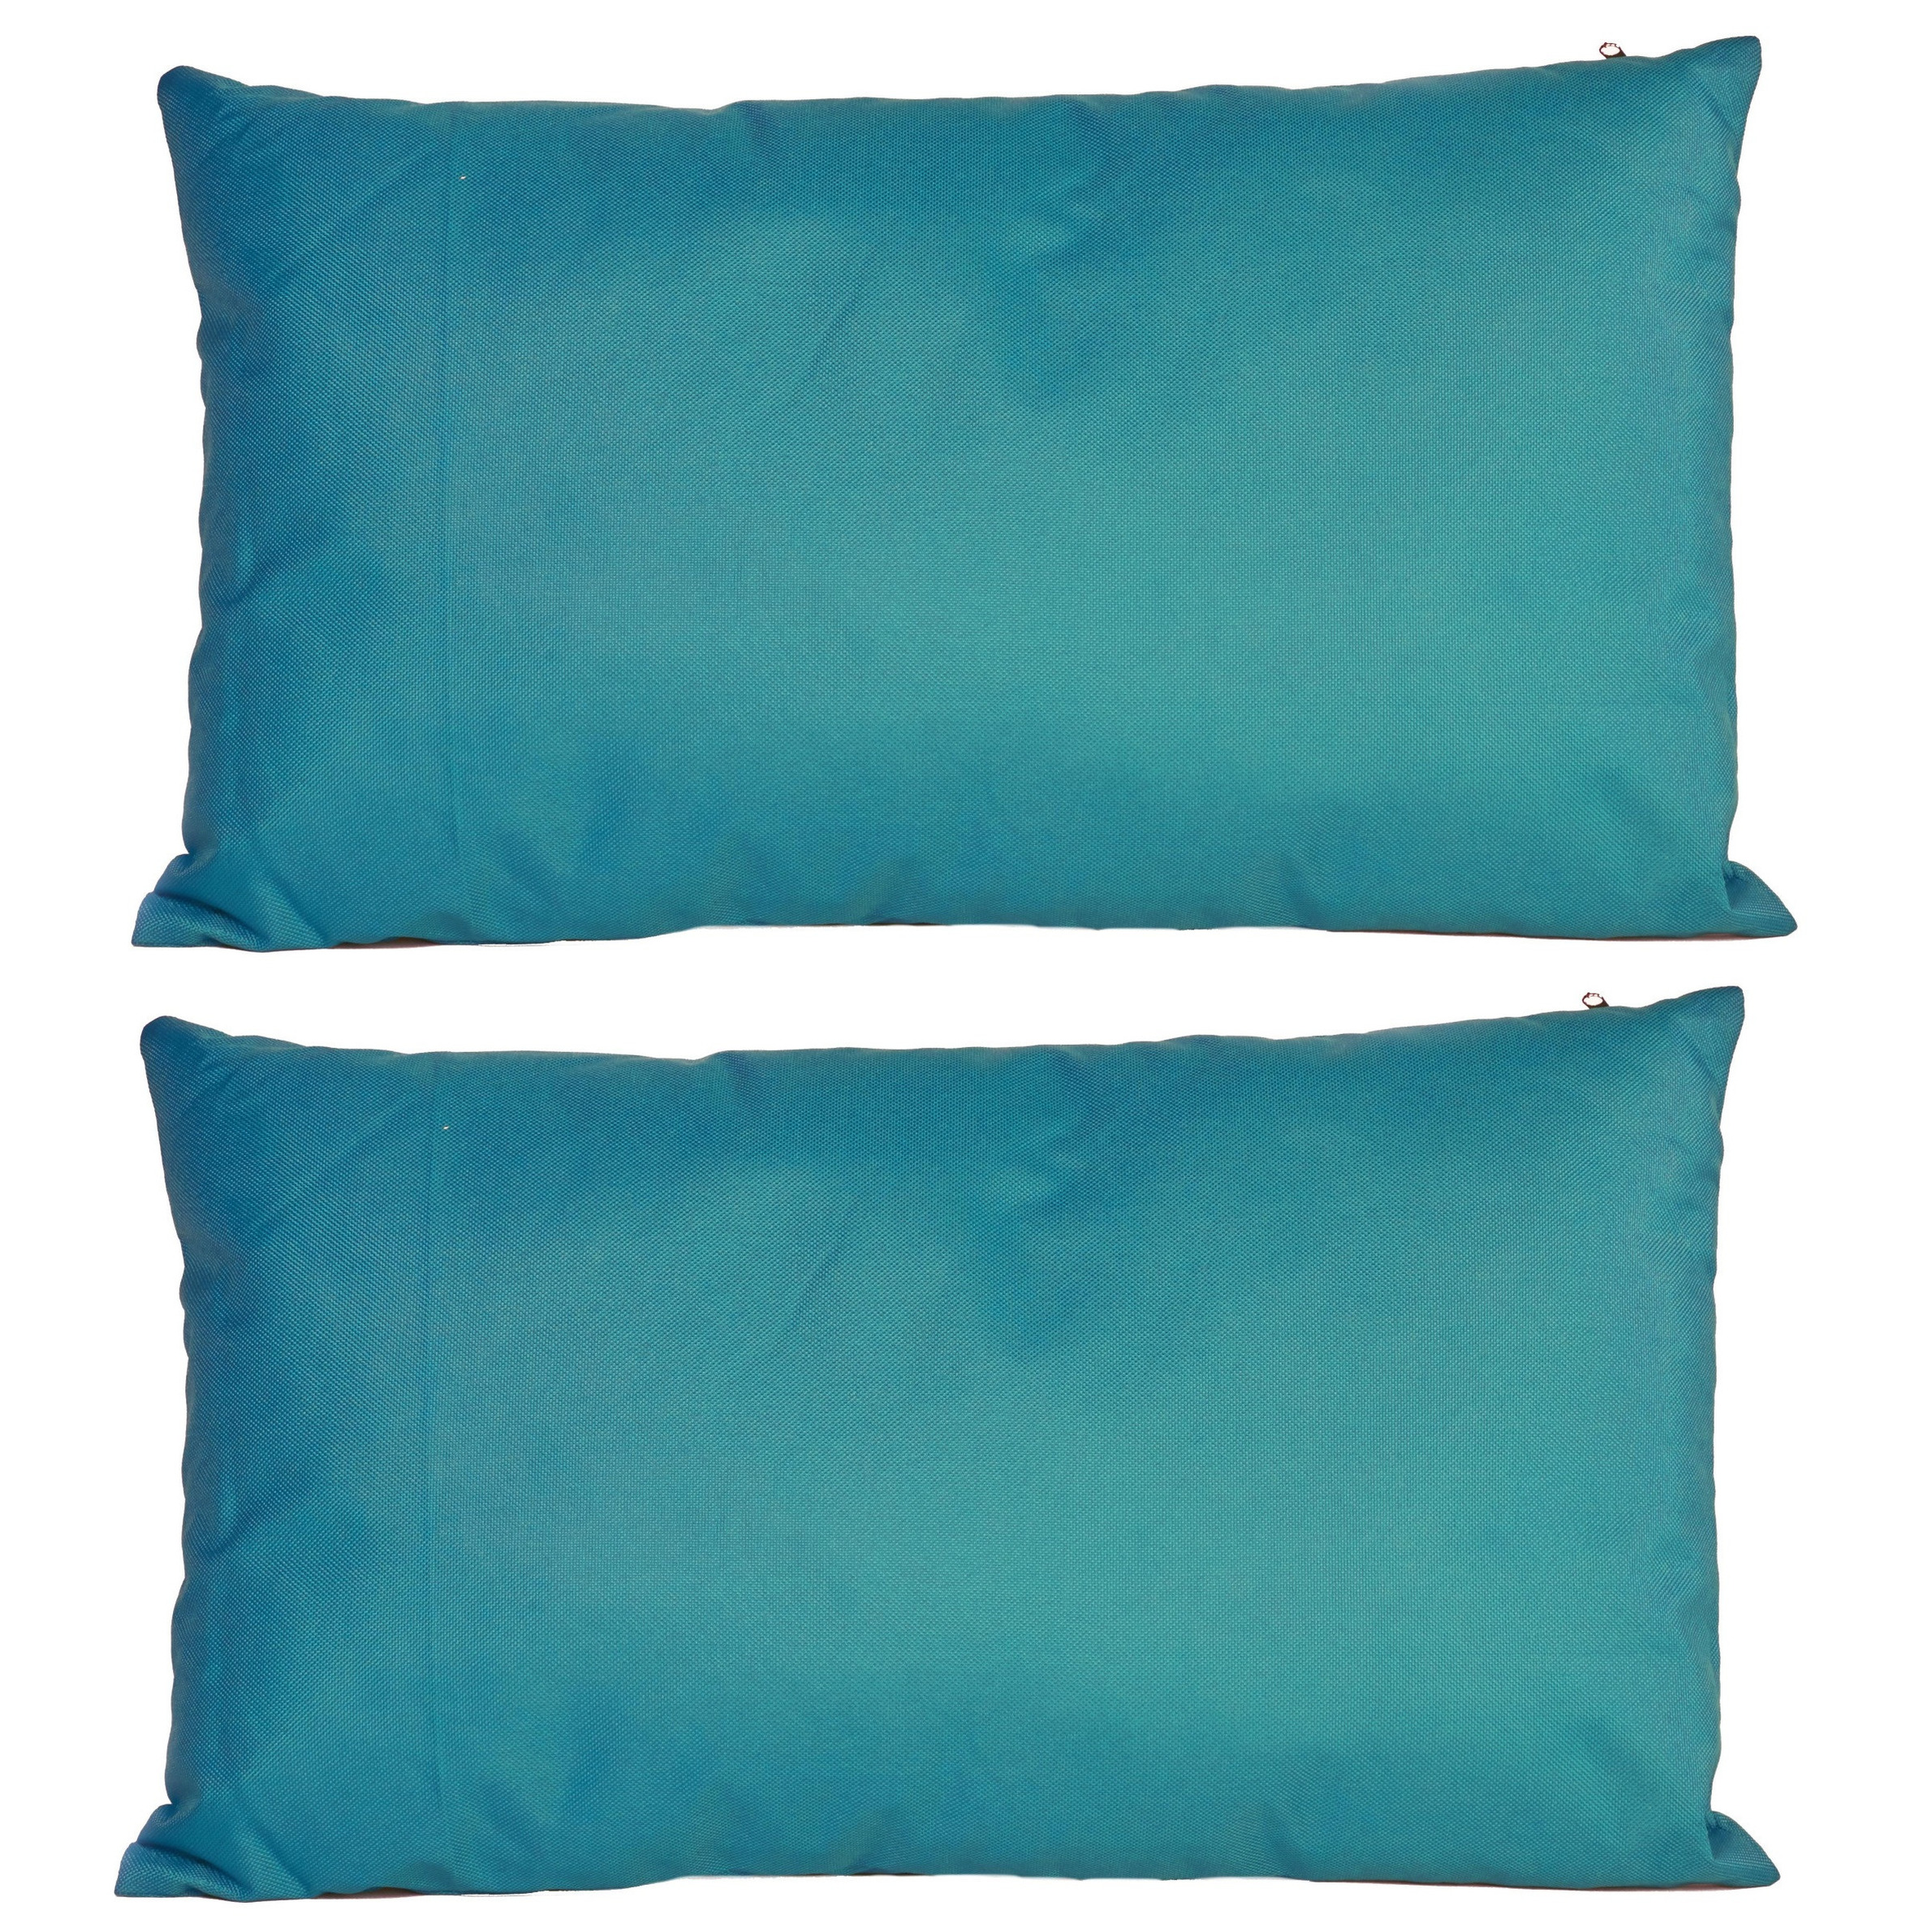 6x Bank-sier kussens voor binnen en buiten in de kleur petrol blauw 30 x 50 cm